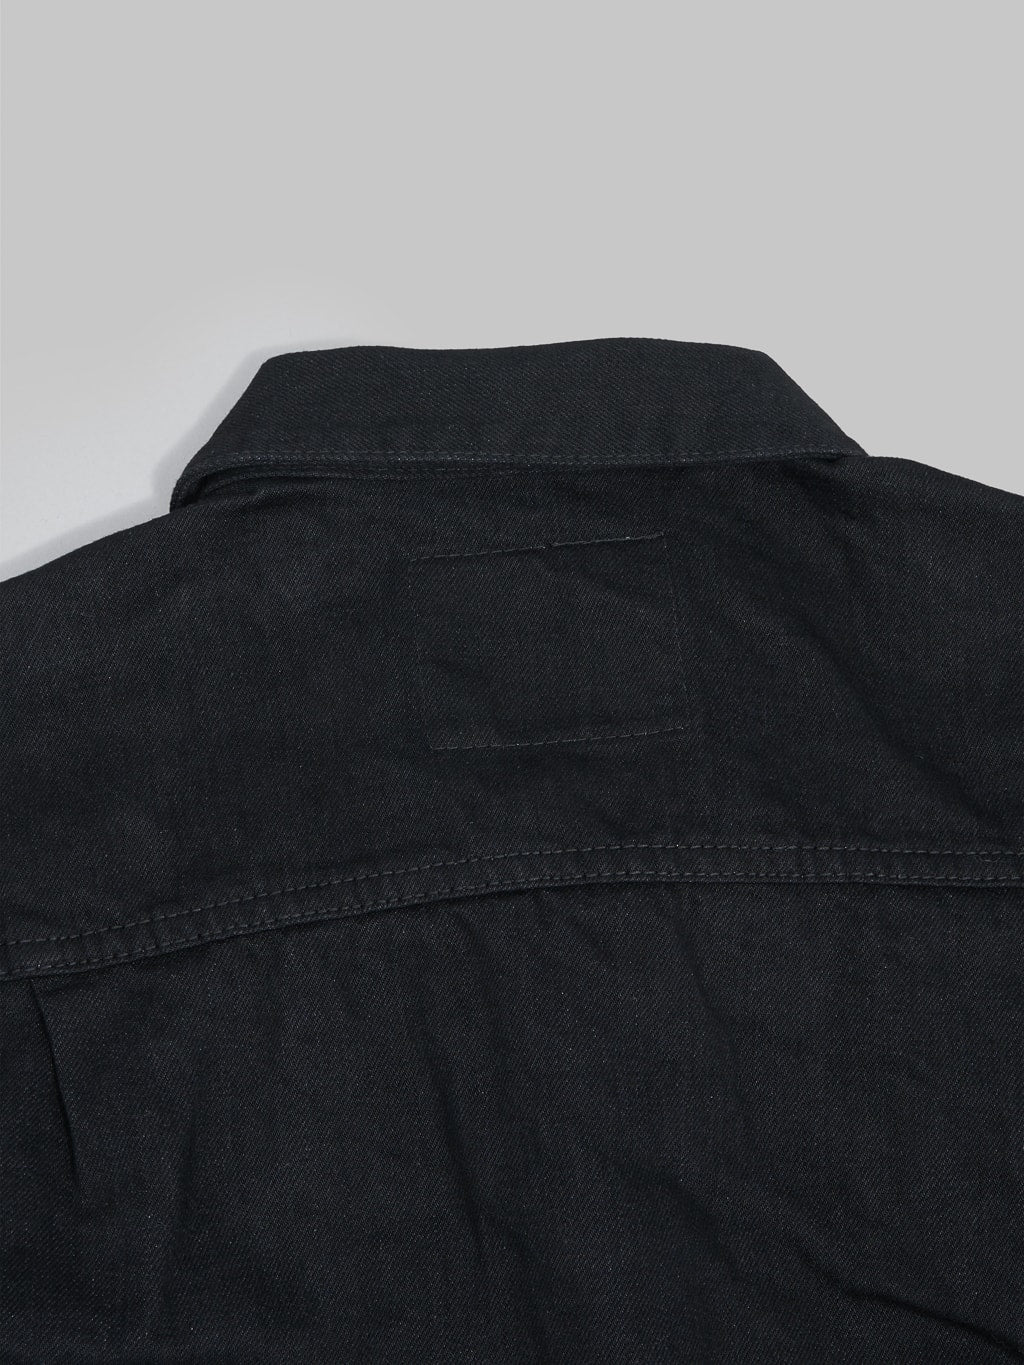 Momotaro MXGJ1108 Black x Black Type II Jacket  stitching